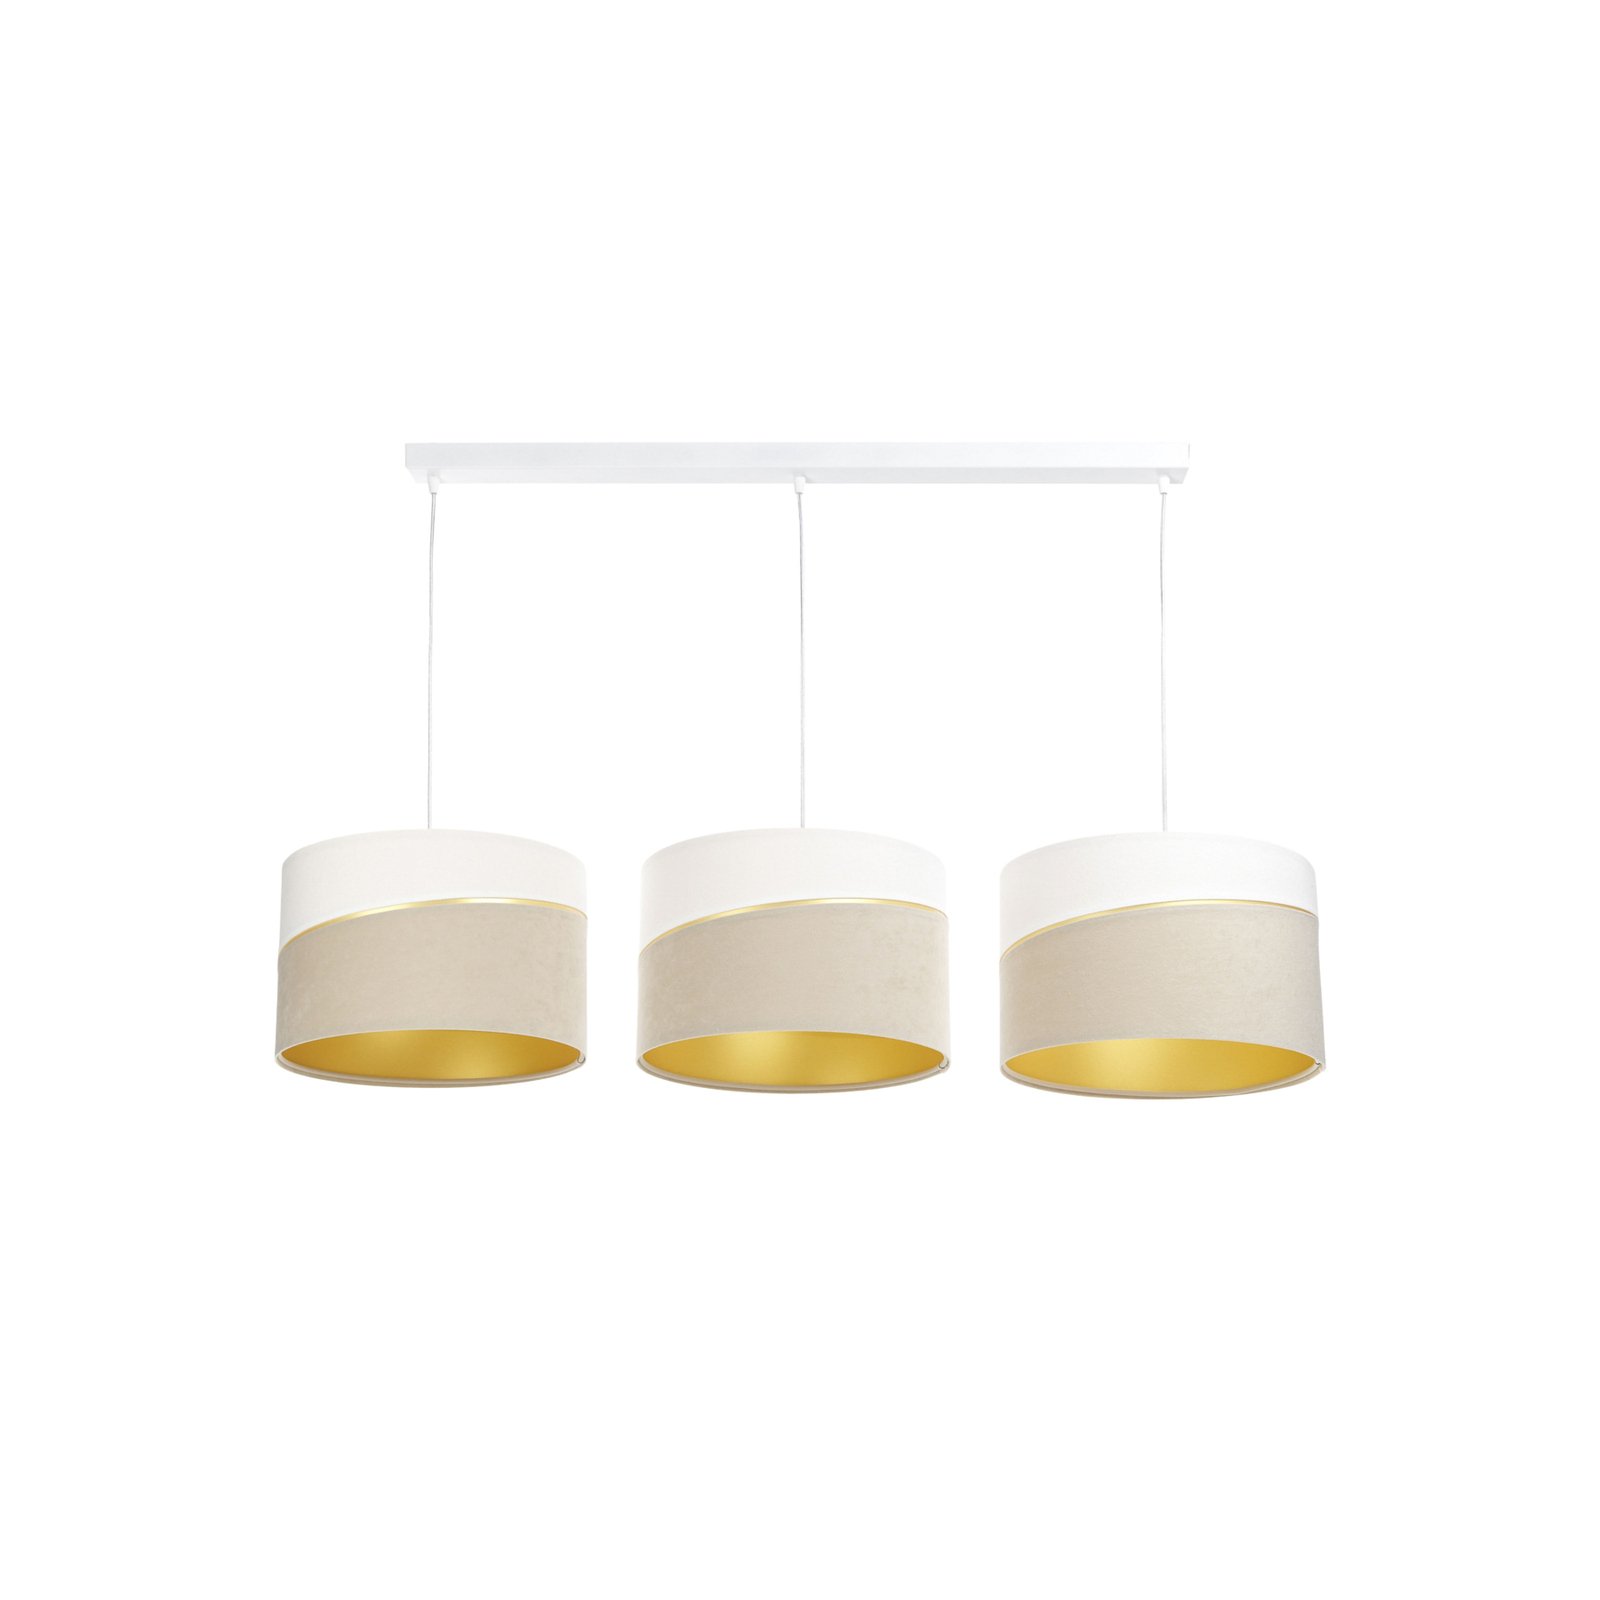 Susan hængelampe, 3 lyskilder, hvid/beige/guld